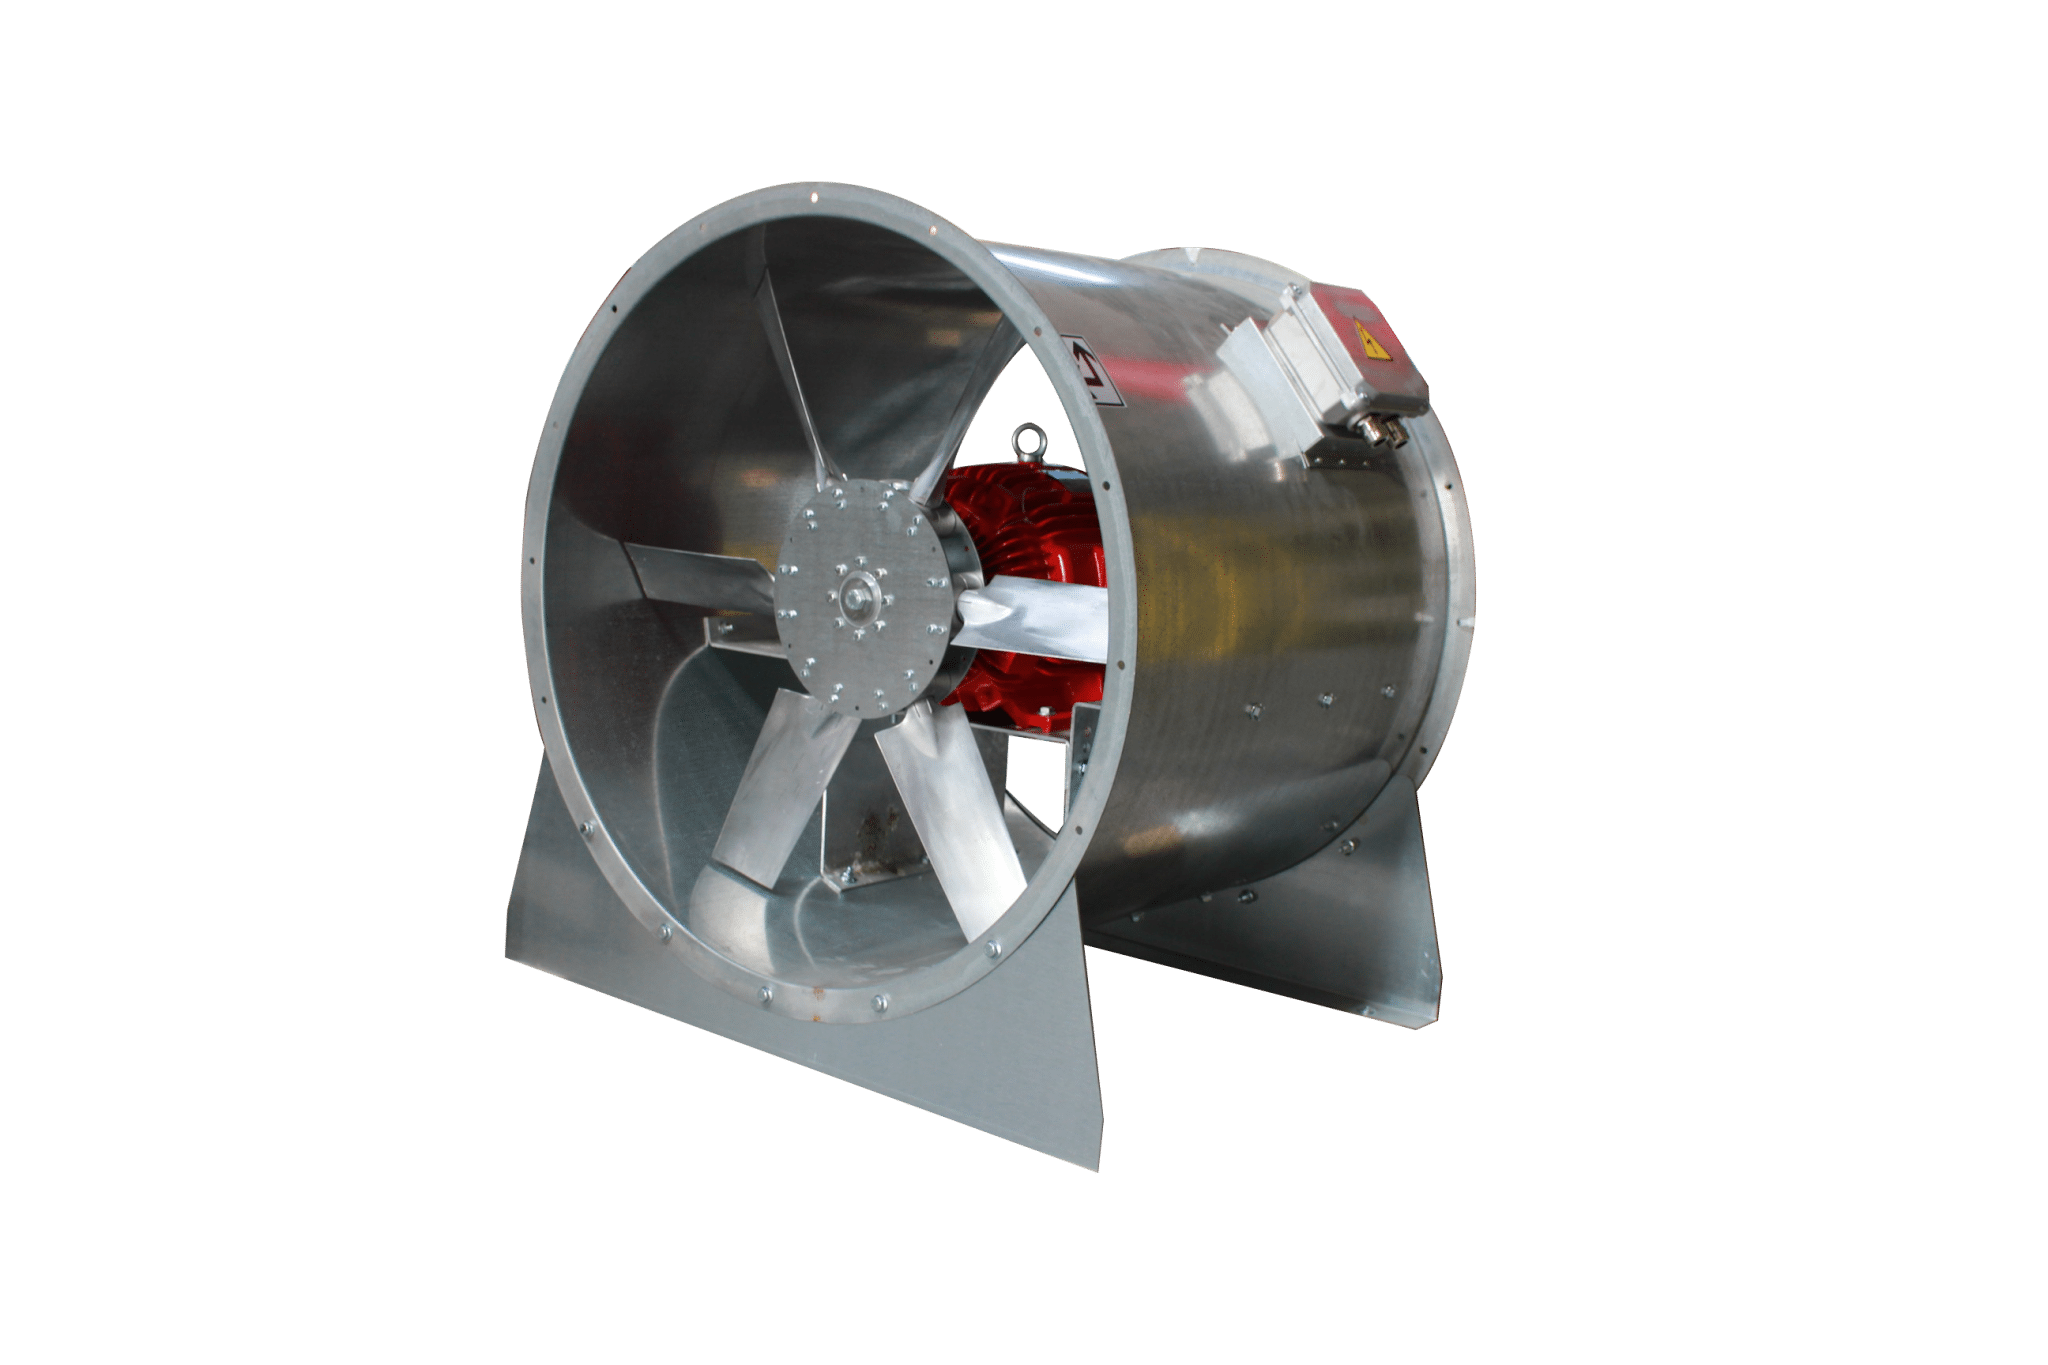 Axial Duct Fan